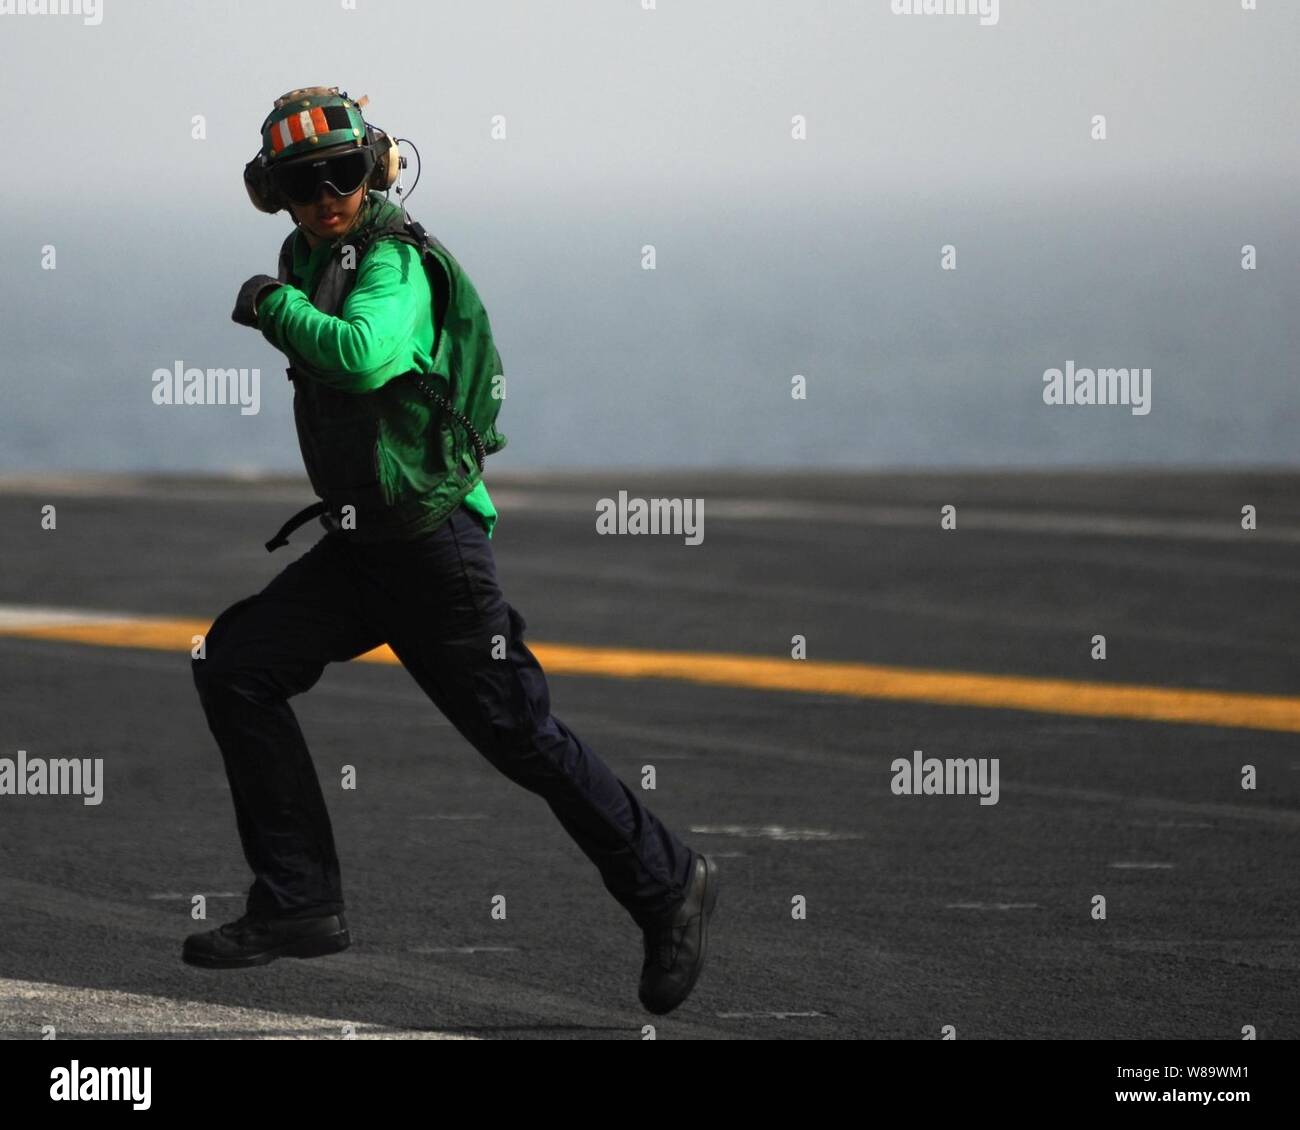 La aviación de la Marina de los EE.UU Boatswain's Mate Suboficiales Michael Kwon sprints de 3ª clase de regreso a través de la zona de aterrizaje después de comprobar el estado de un cable durante la detención de aeronaves de ala fija en operaciones de recuperación a bordo de la clase Nimitz portaaviones USS Abraham Lincoln (CVN 72) mientras se llevan a cabo en el Golfo Pérsico el 20 de mayo de 2008. El Lincoln está desplegado en la Marina de los EE.UU. 5ª Flota área de responsabilidad para apoyar operaciones de seguridad marítima. Foto de stock